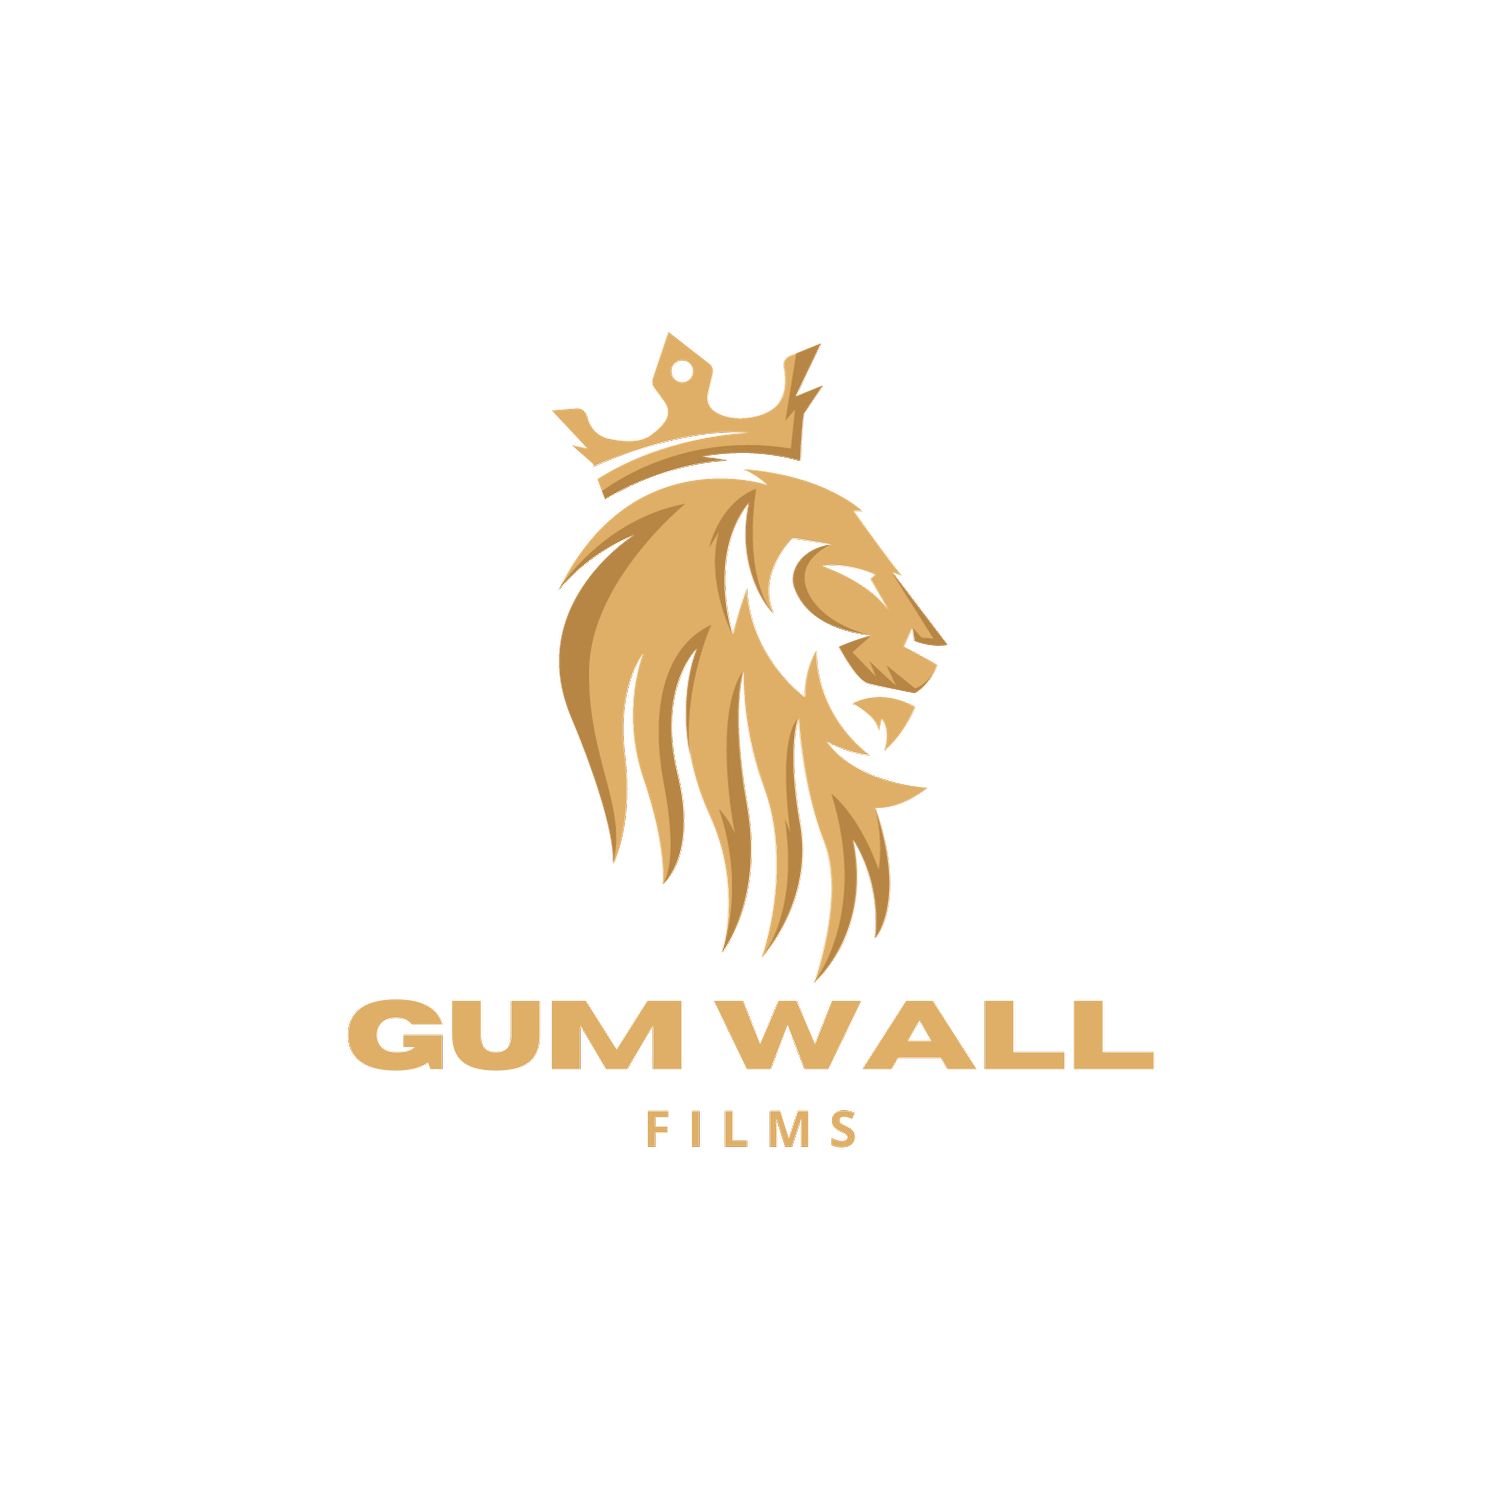 Gum Wall Films